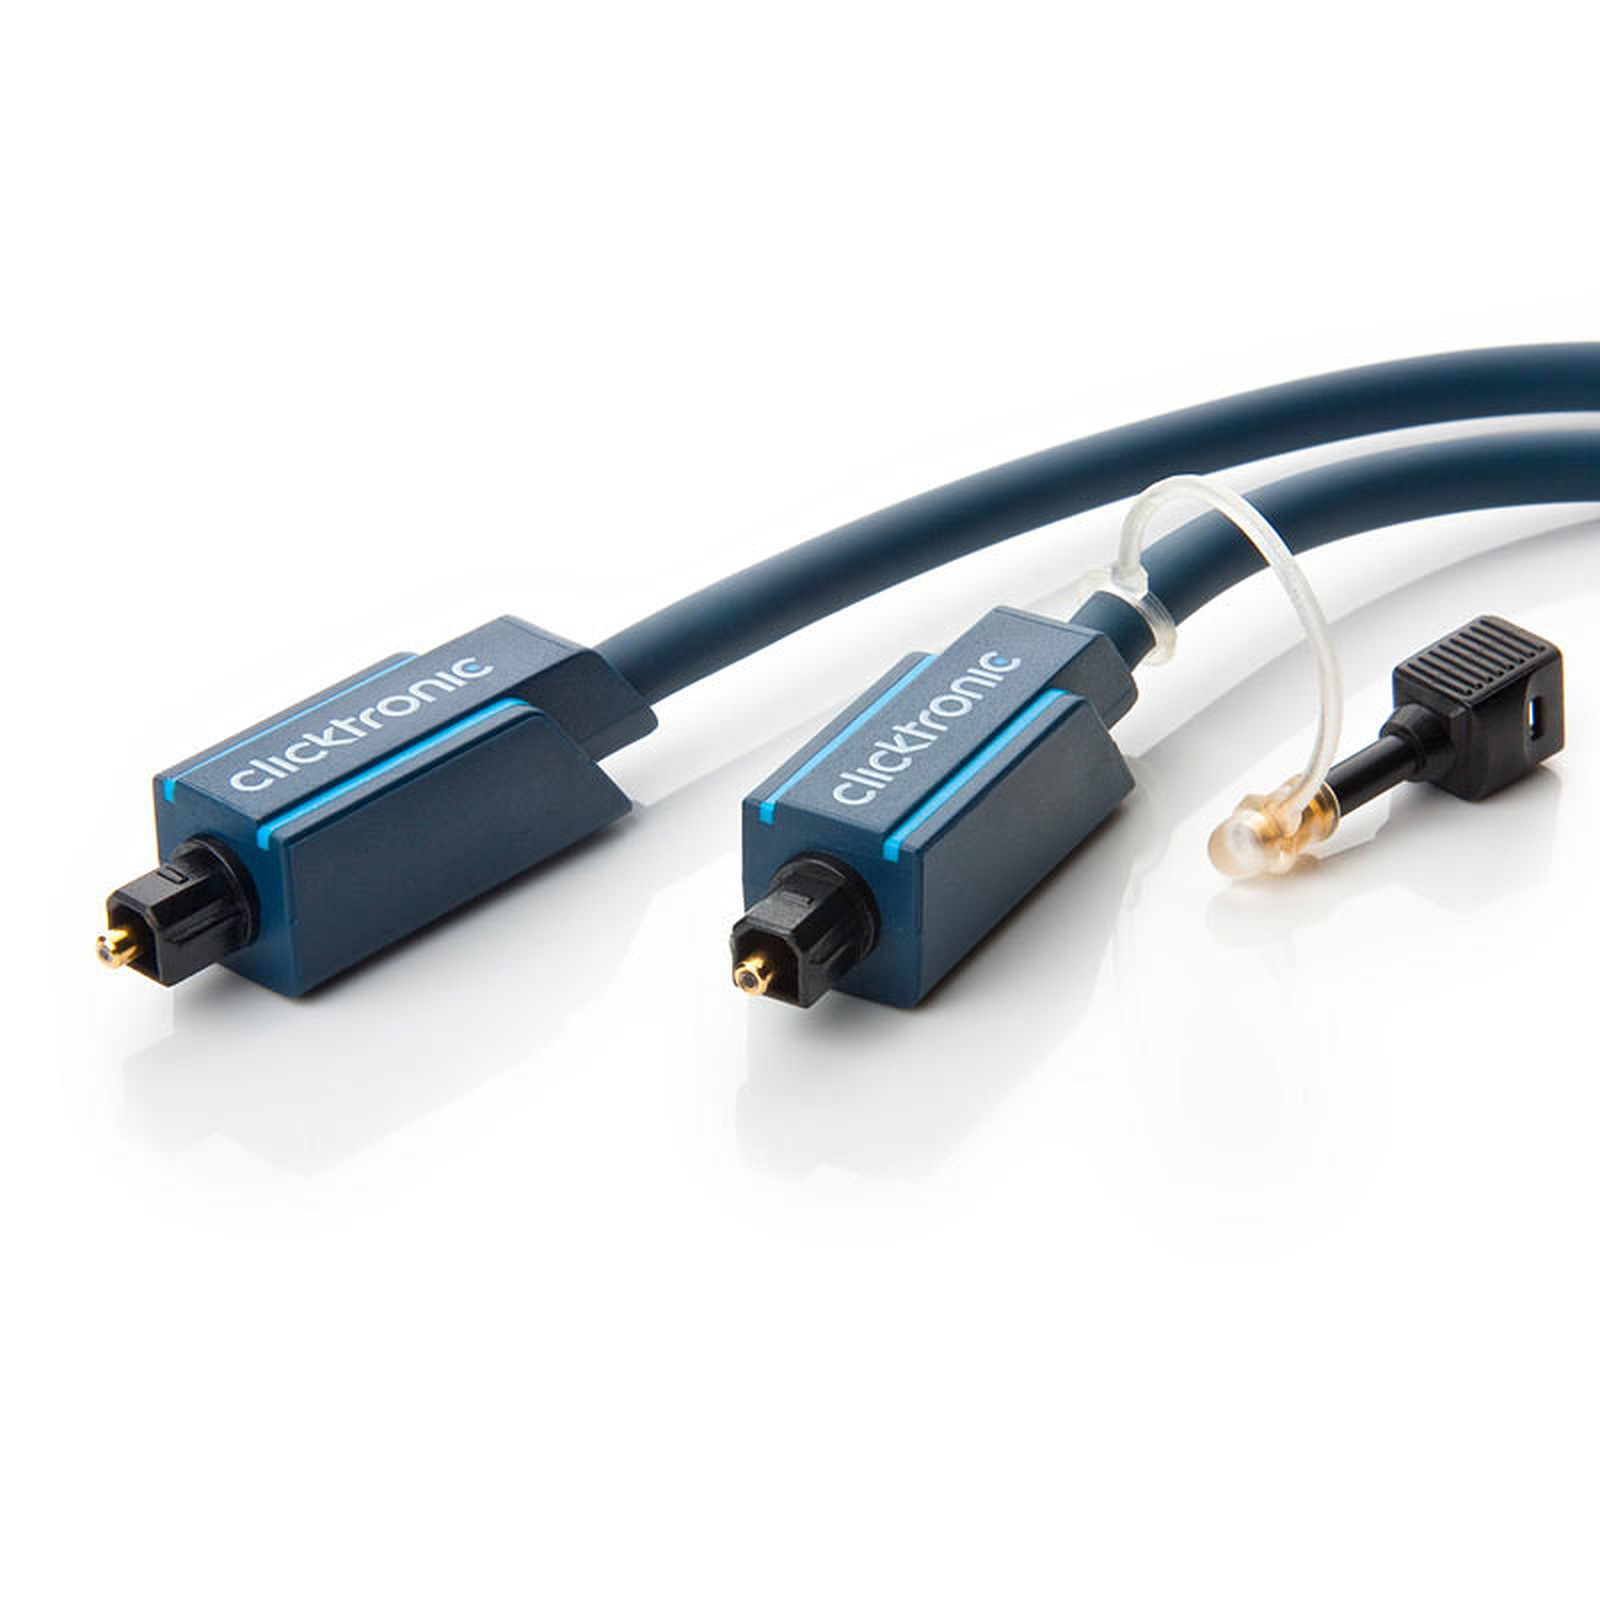 Clicktronic cable Toslink (5 mètres) - Cable audio numerique Clicktronic